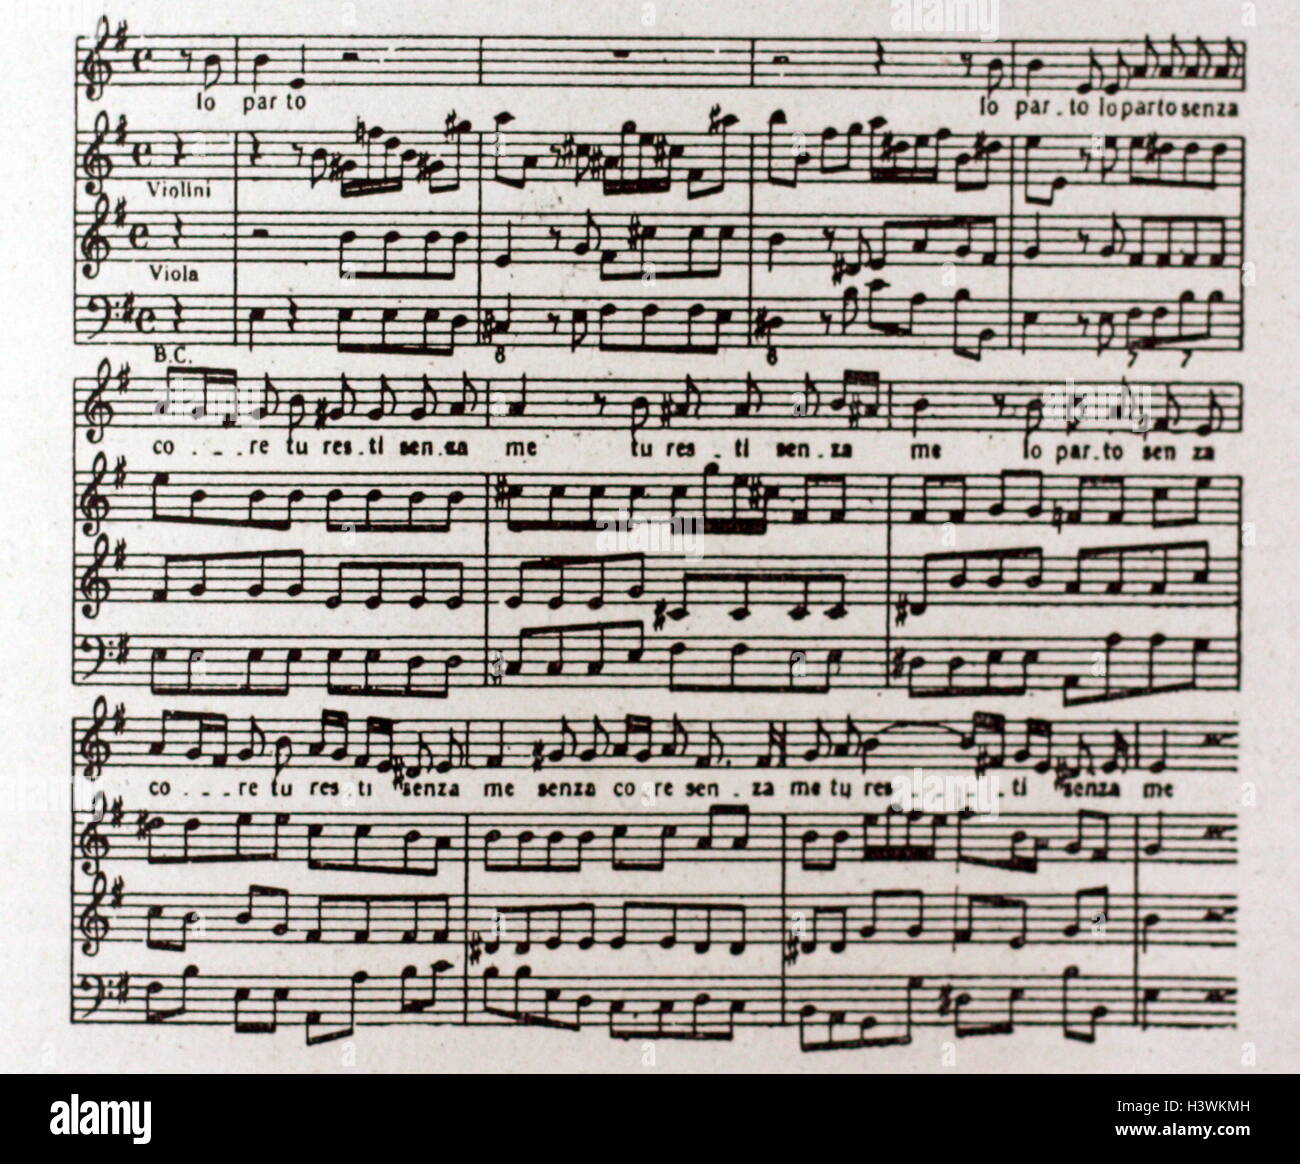 Aria de l'Opéra Irene, révisé par Domenico Scarlatti (1685-1757), un compositeur baroque italien. En date du 18e siècle Banque D'Images